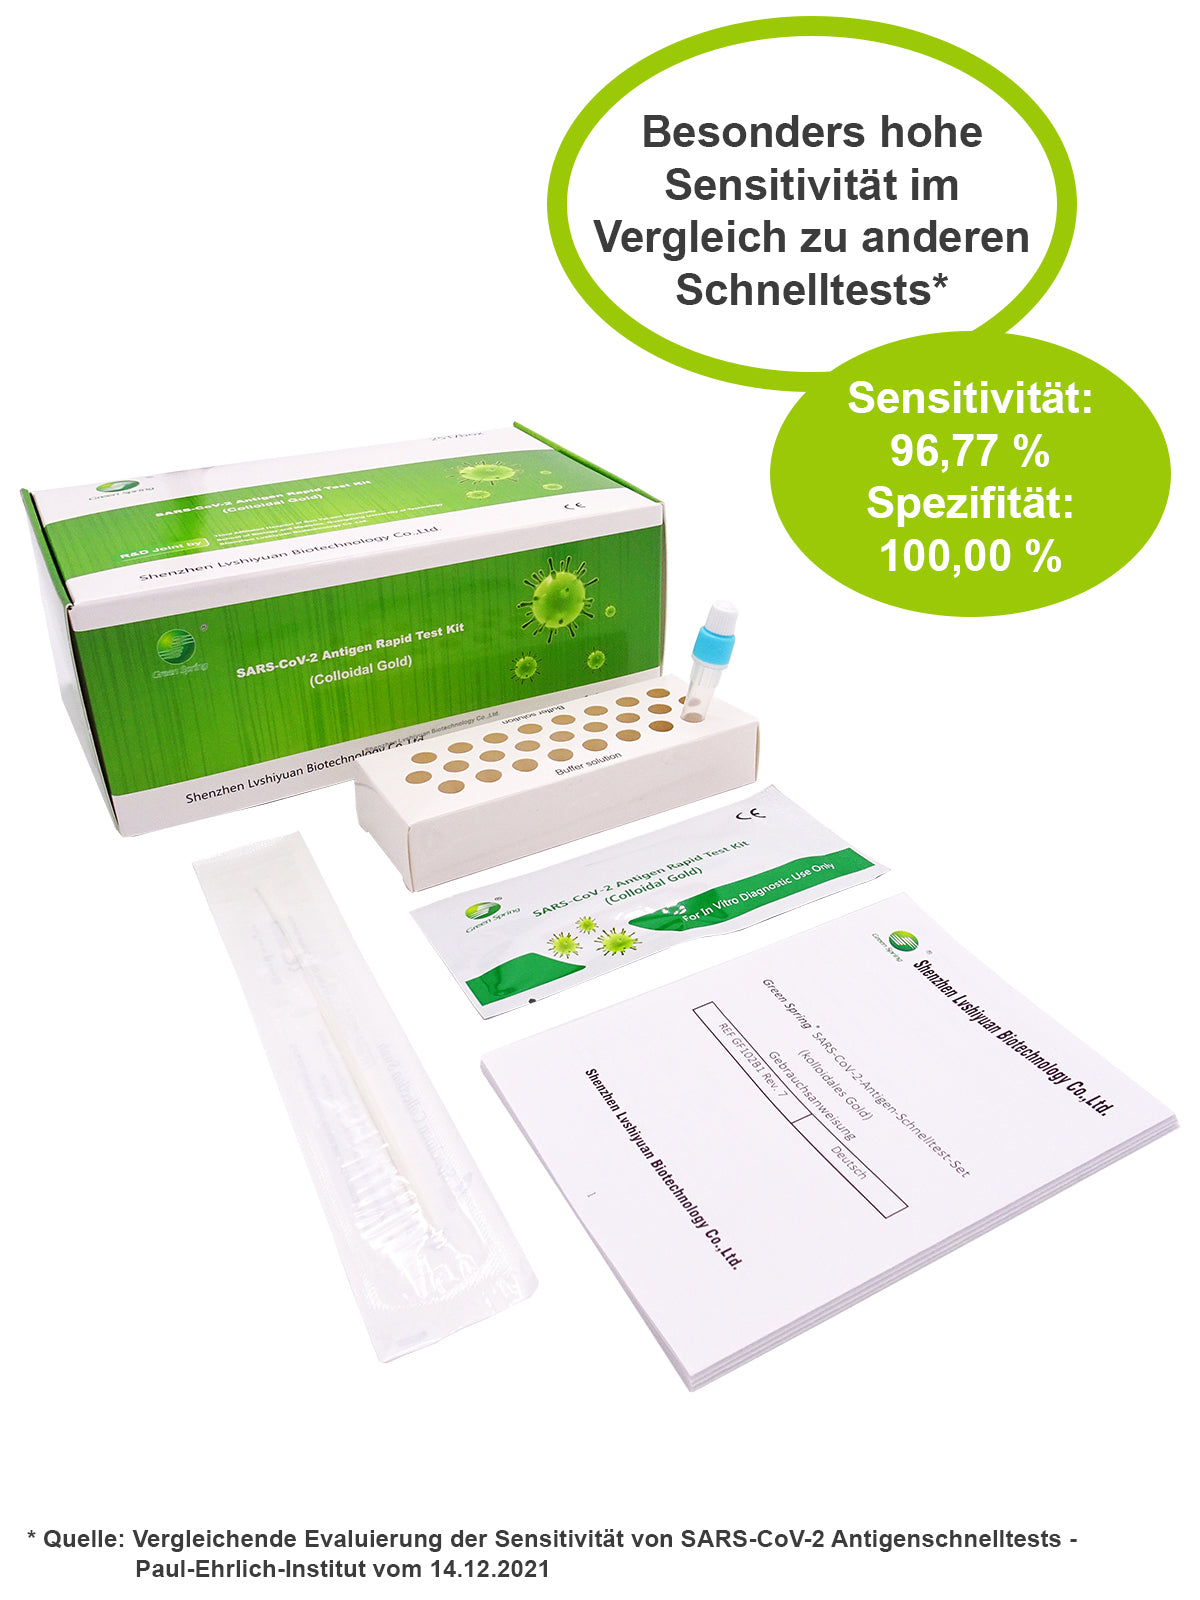 Green Spring® COVID-19 Antigen Schnelltest - 0,25€ / Test -  25er Packung Profitest - OMIKRON XBB.1.5 zugelassen - 4 in 1 Test - PEI 2022